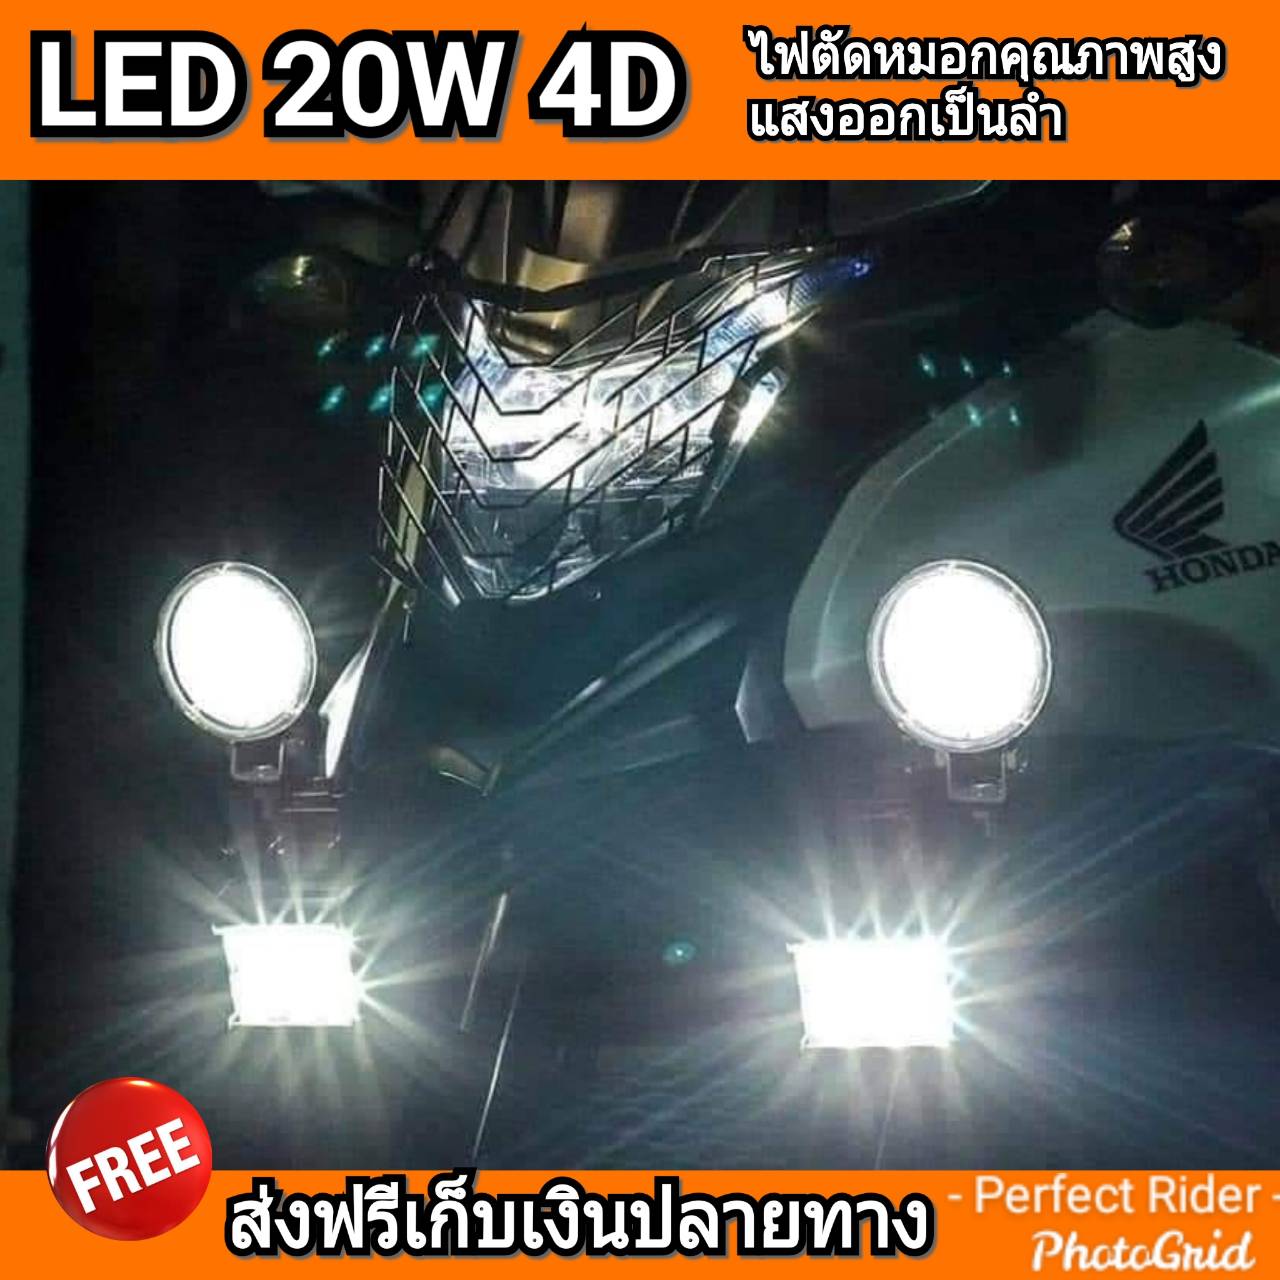 ไฟตัดหมอก LED 20W เลนส์ 4D แสงขาว แสงเหลือง สว่างออกเป็นลำ สว่างระยะไกล ไม่แยงตา